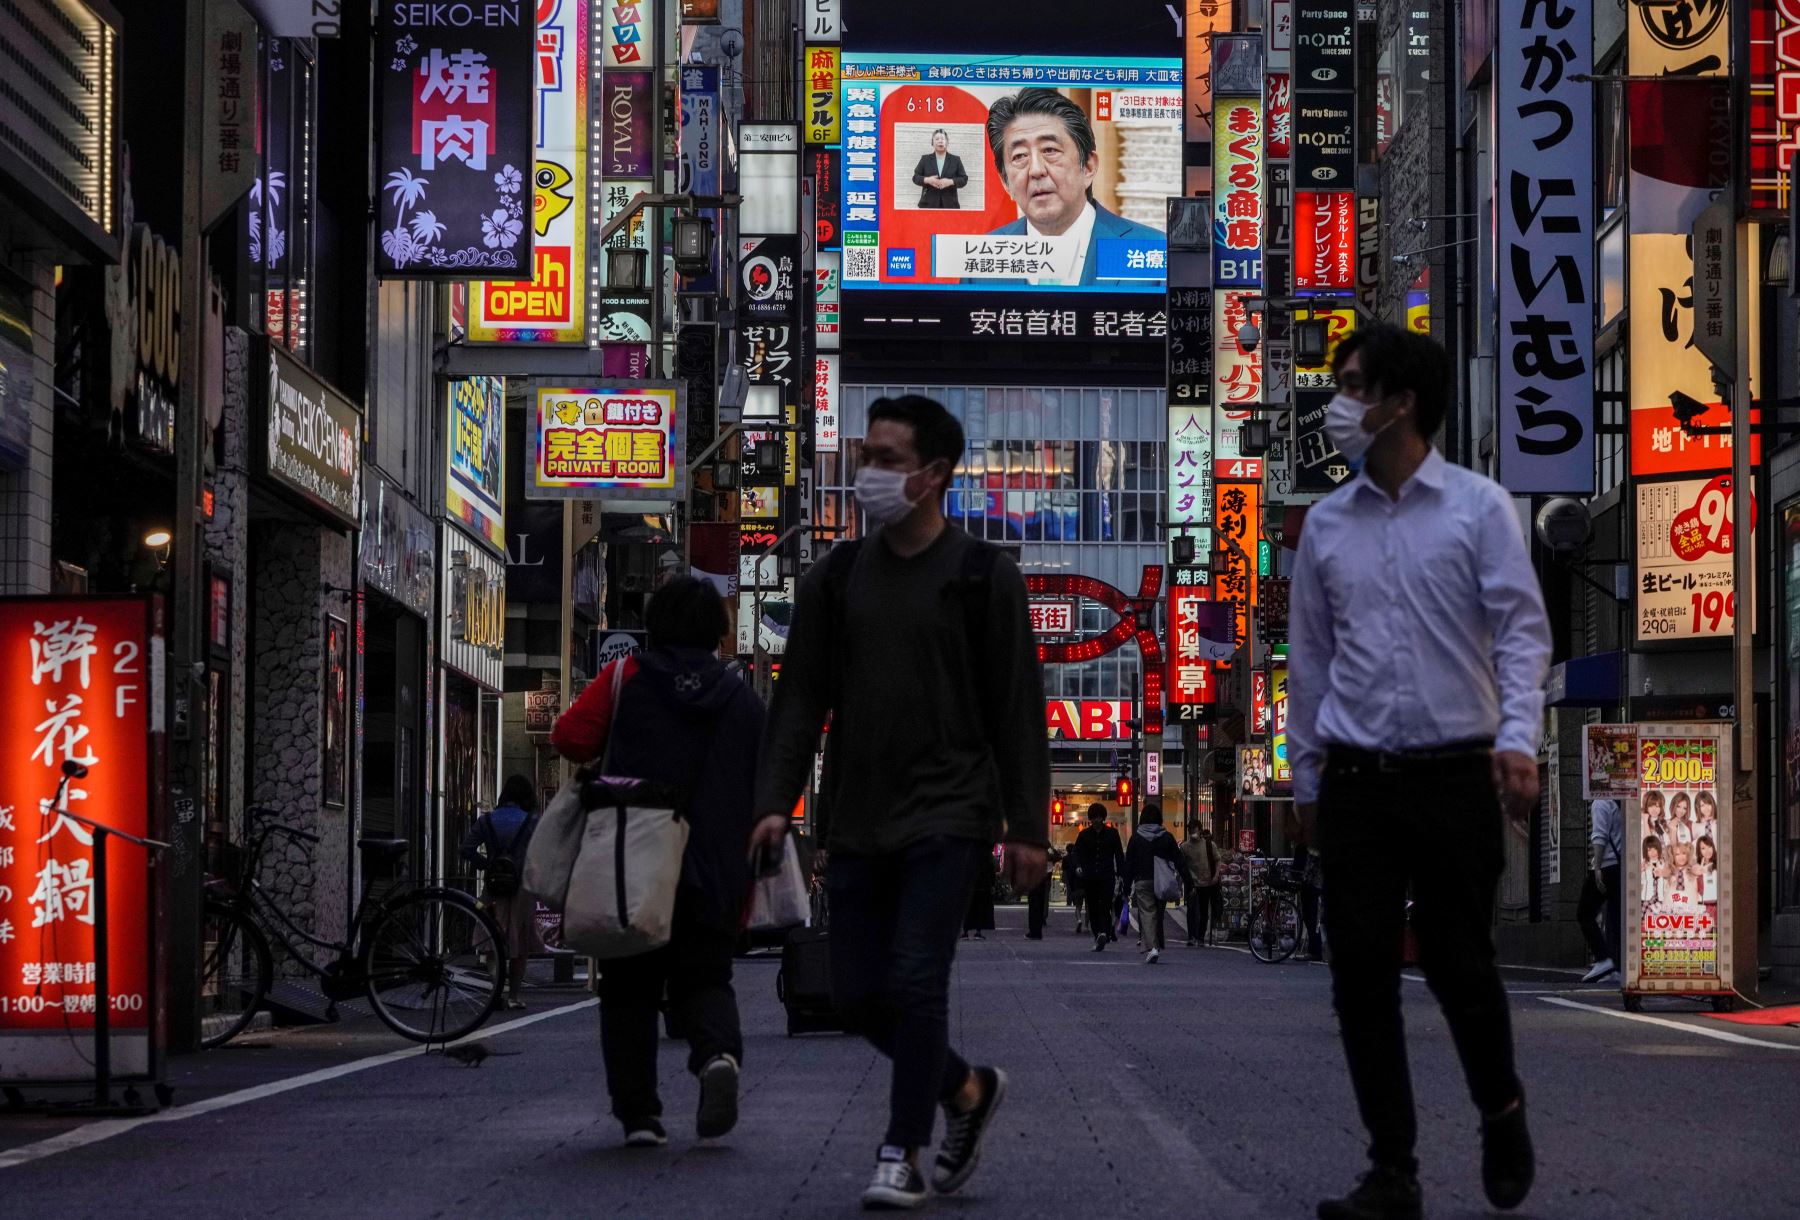 Los peatones pasan frente a una pantalla de televisión pública que muestra al primer ministro japonés Shinzo Abe hablando en una conferencia de prensa televisada en Kabukicho, el distrito de entretenimiento más grande y popular de Shinjuku en Tokio, Japón. Foto: EFE